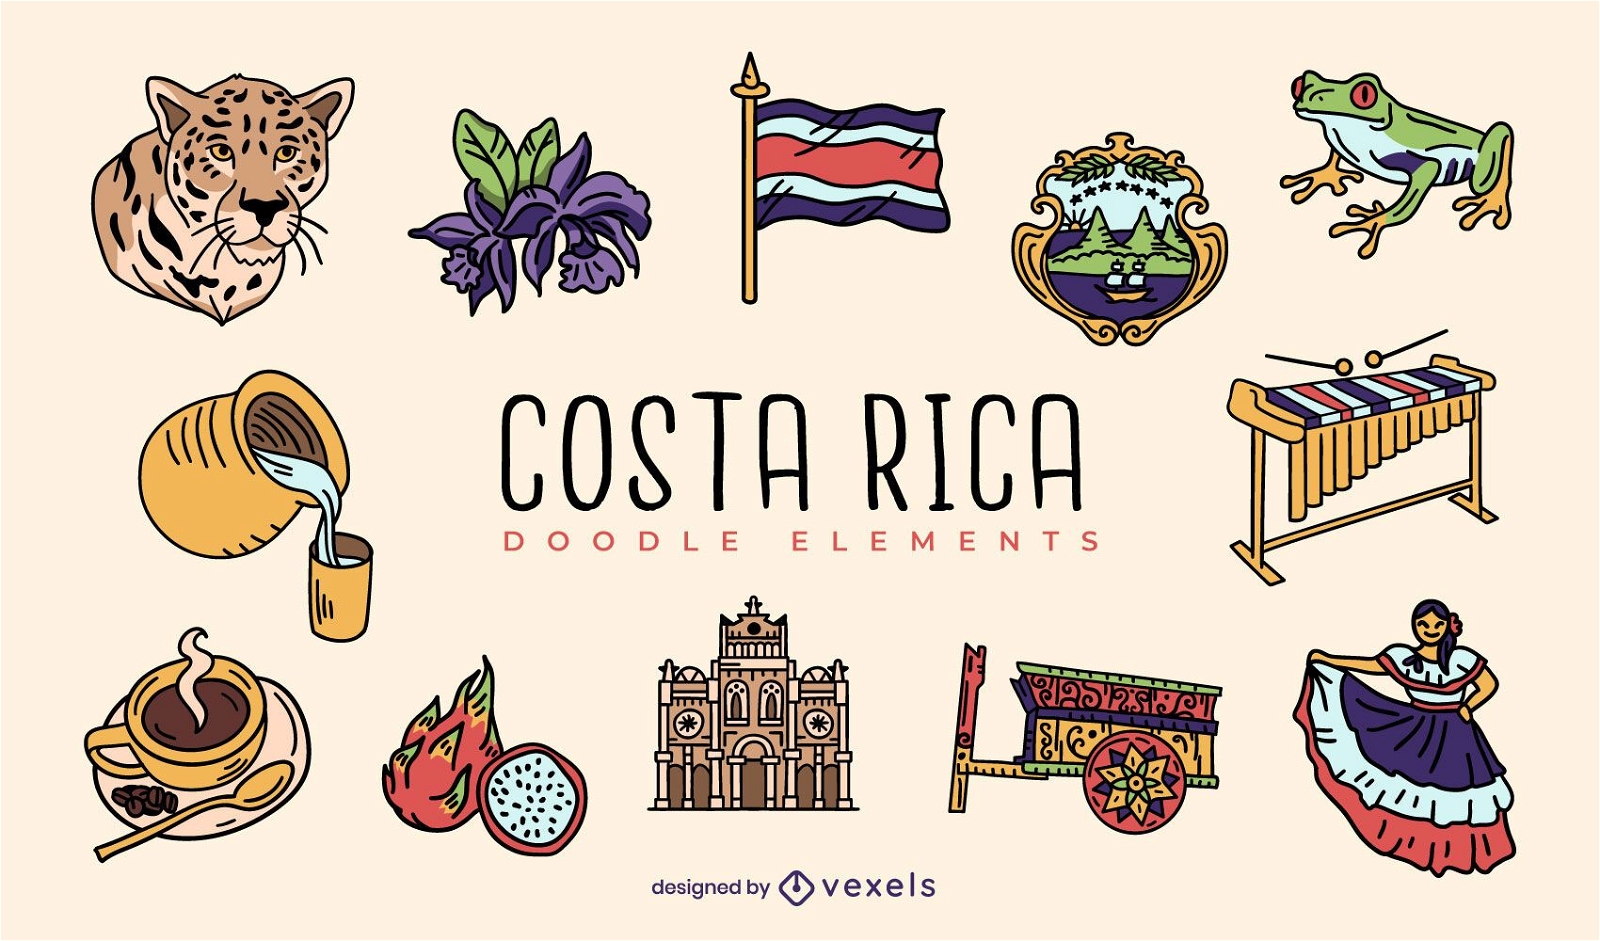 Costa rica doodle elements set